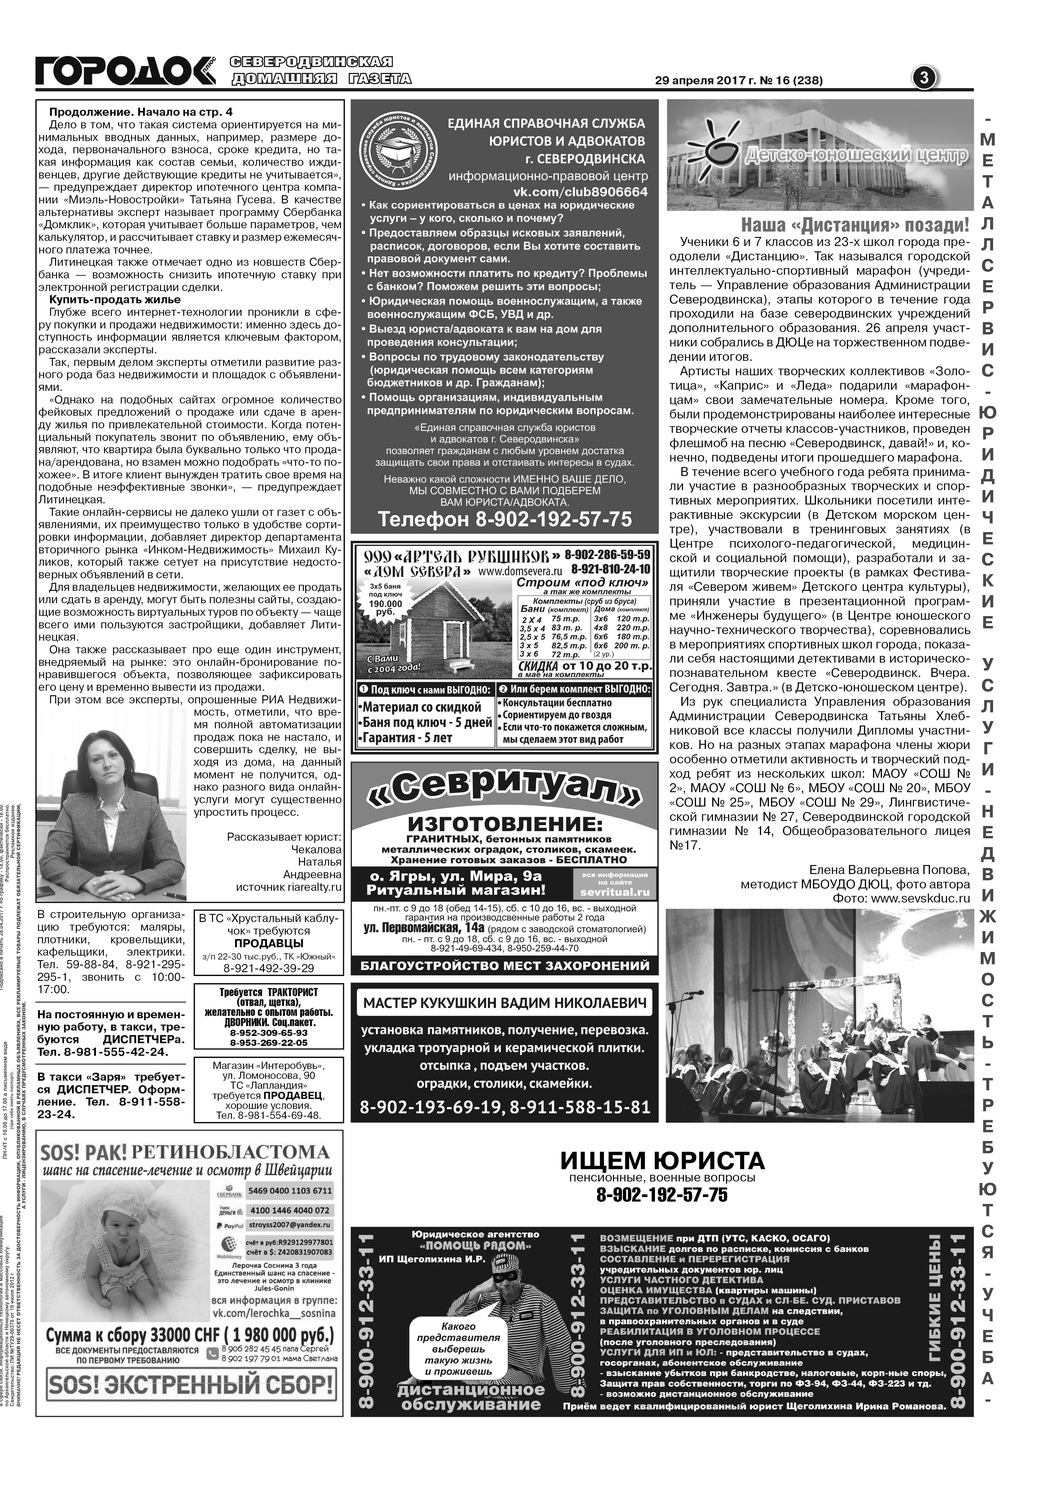 Городок плюс, выпуск номер 16 от 29 апреля 2017 года, страница 3.